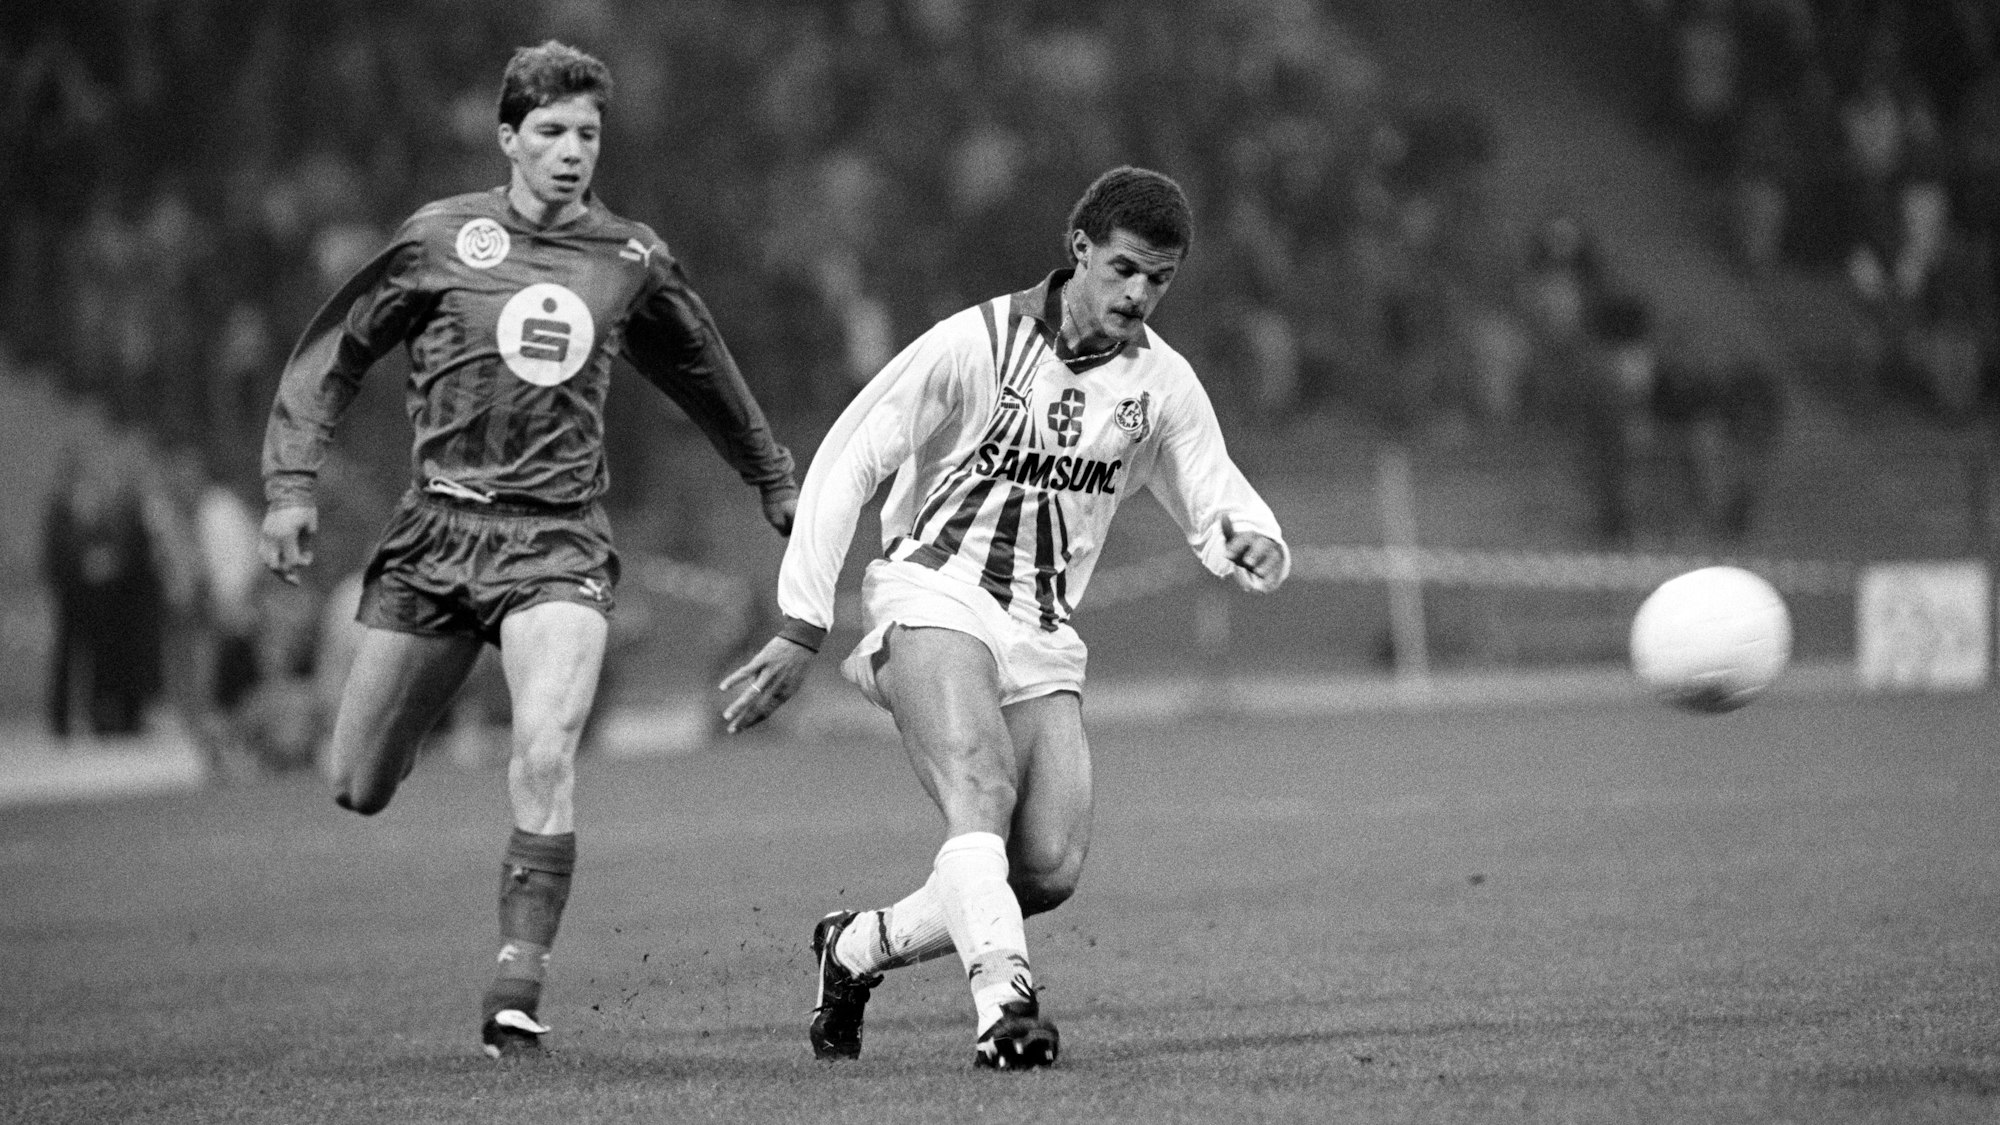 Der 1. FC Köln organisiert ein Gedächtnisspiel für Maurice Banach. Hier spielt er im Pokal-Halbfinale 1991 mit Duisburgs Michael Tarnat.